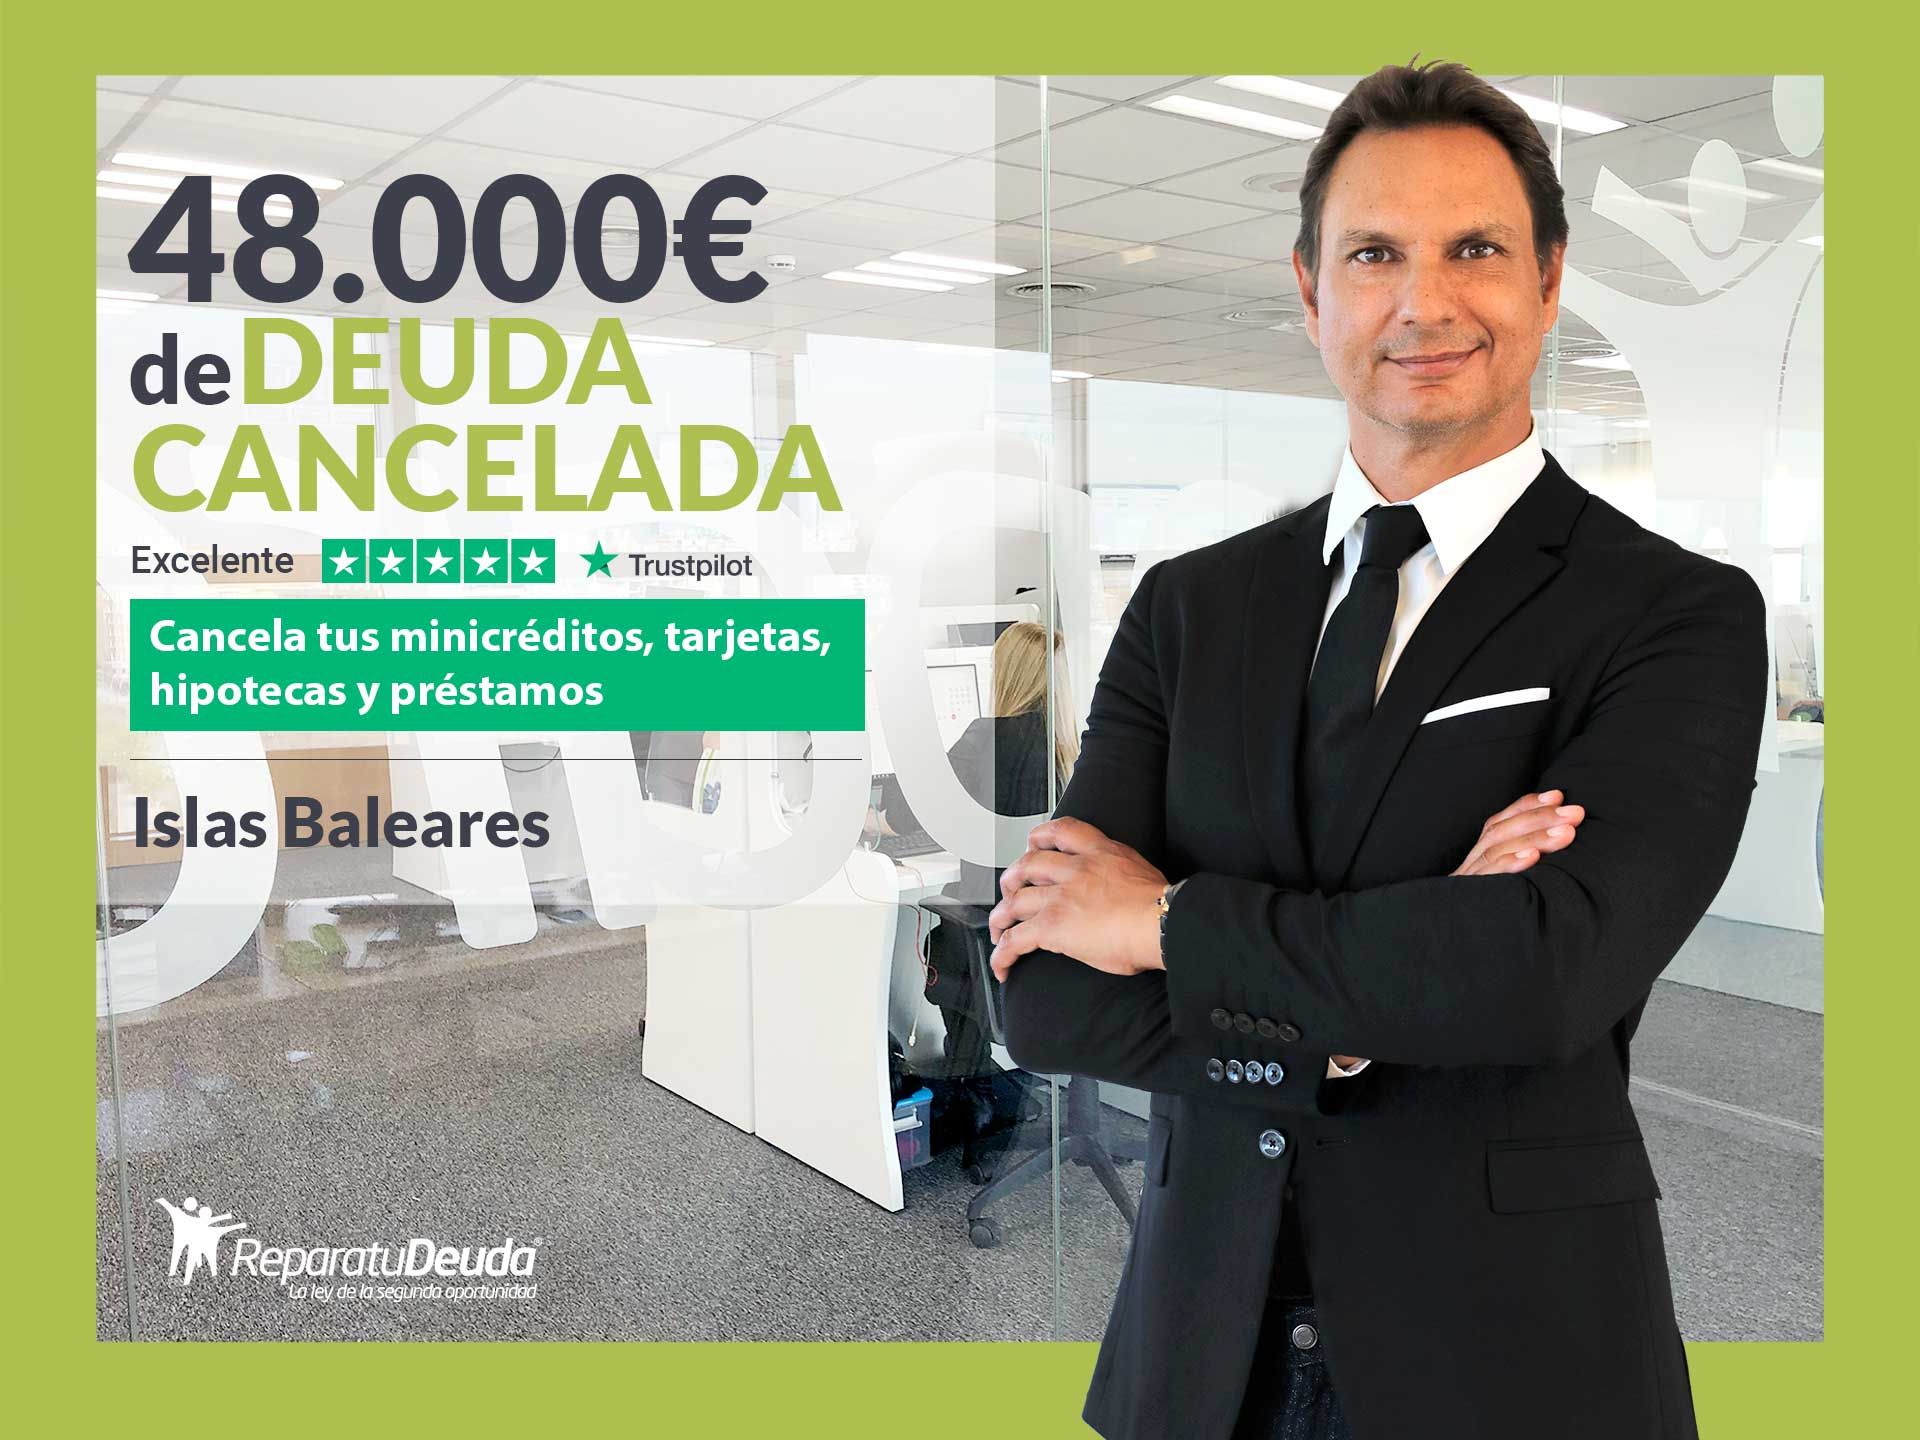 Repara tu Deuda Abogados cancela 48.000? en Mallorca (Baleares) con la Ley de Segunda Oportunidad